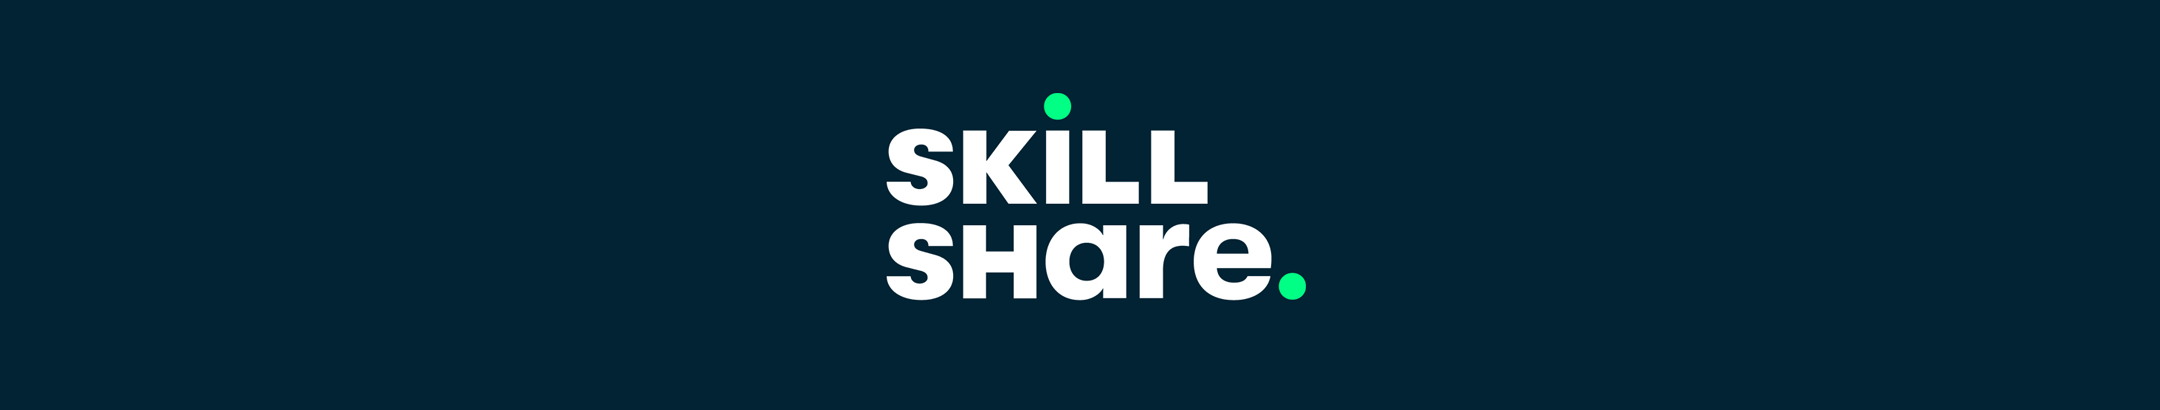 Skillshare Listing Banner